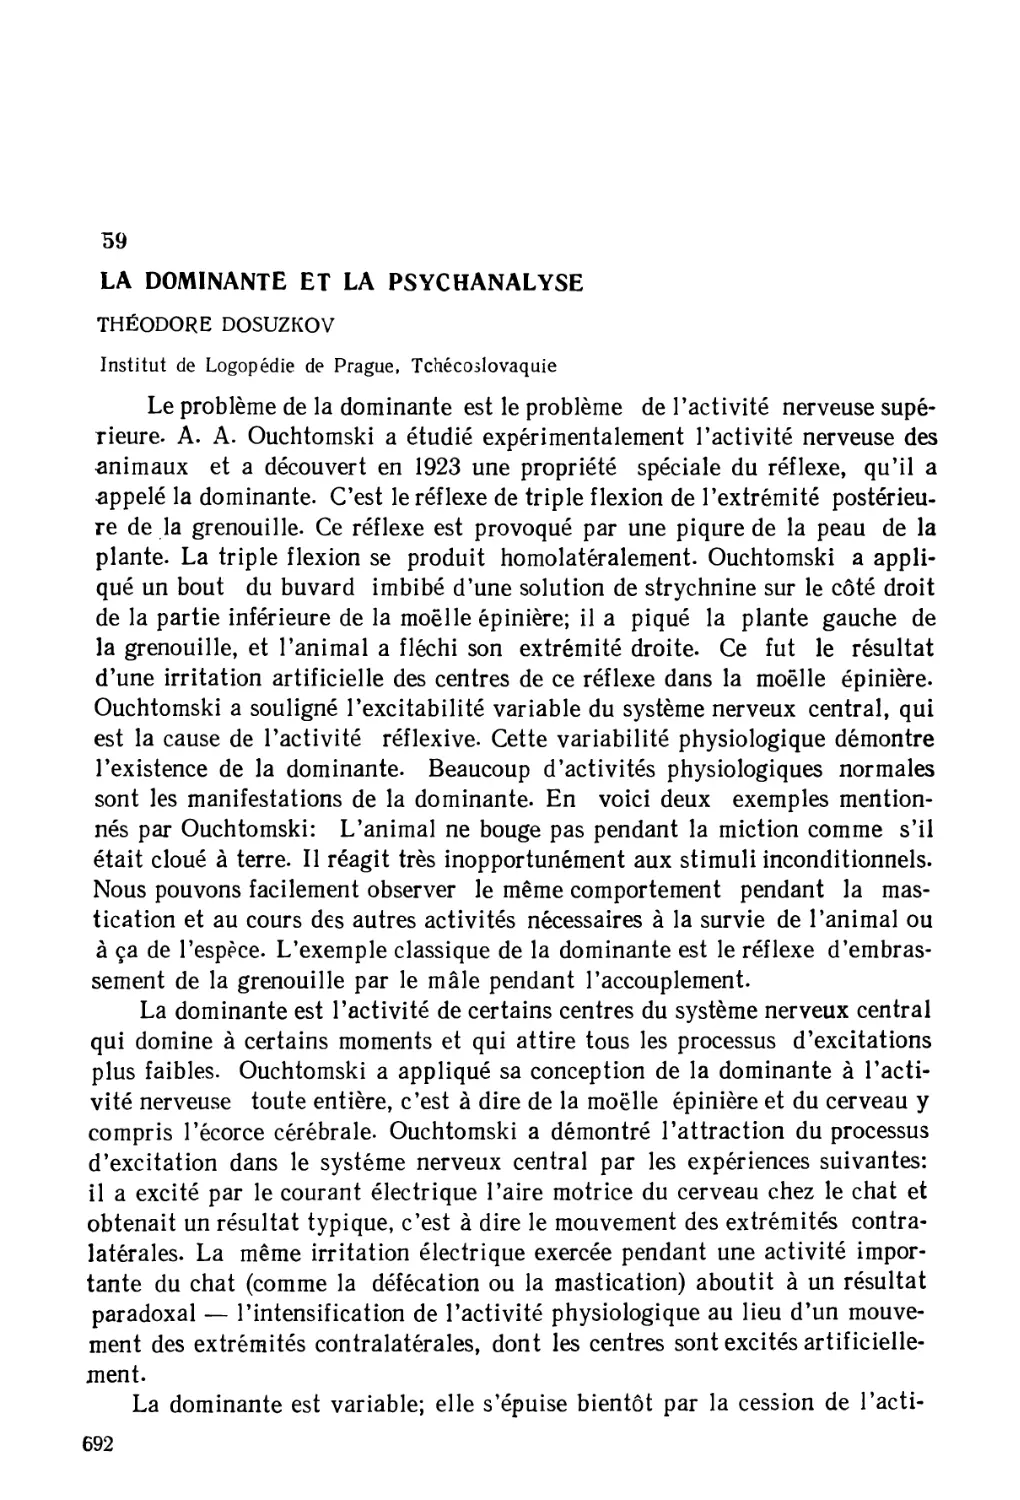 59. Доминанта и психоанализ - Т. Досужков
59. La Dominante et la psychanalyse - Th. Dosuzkov